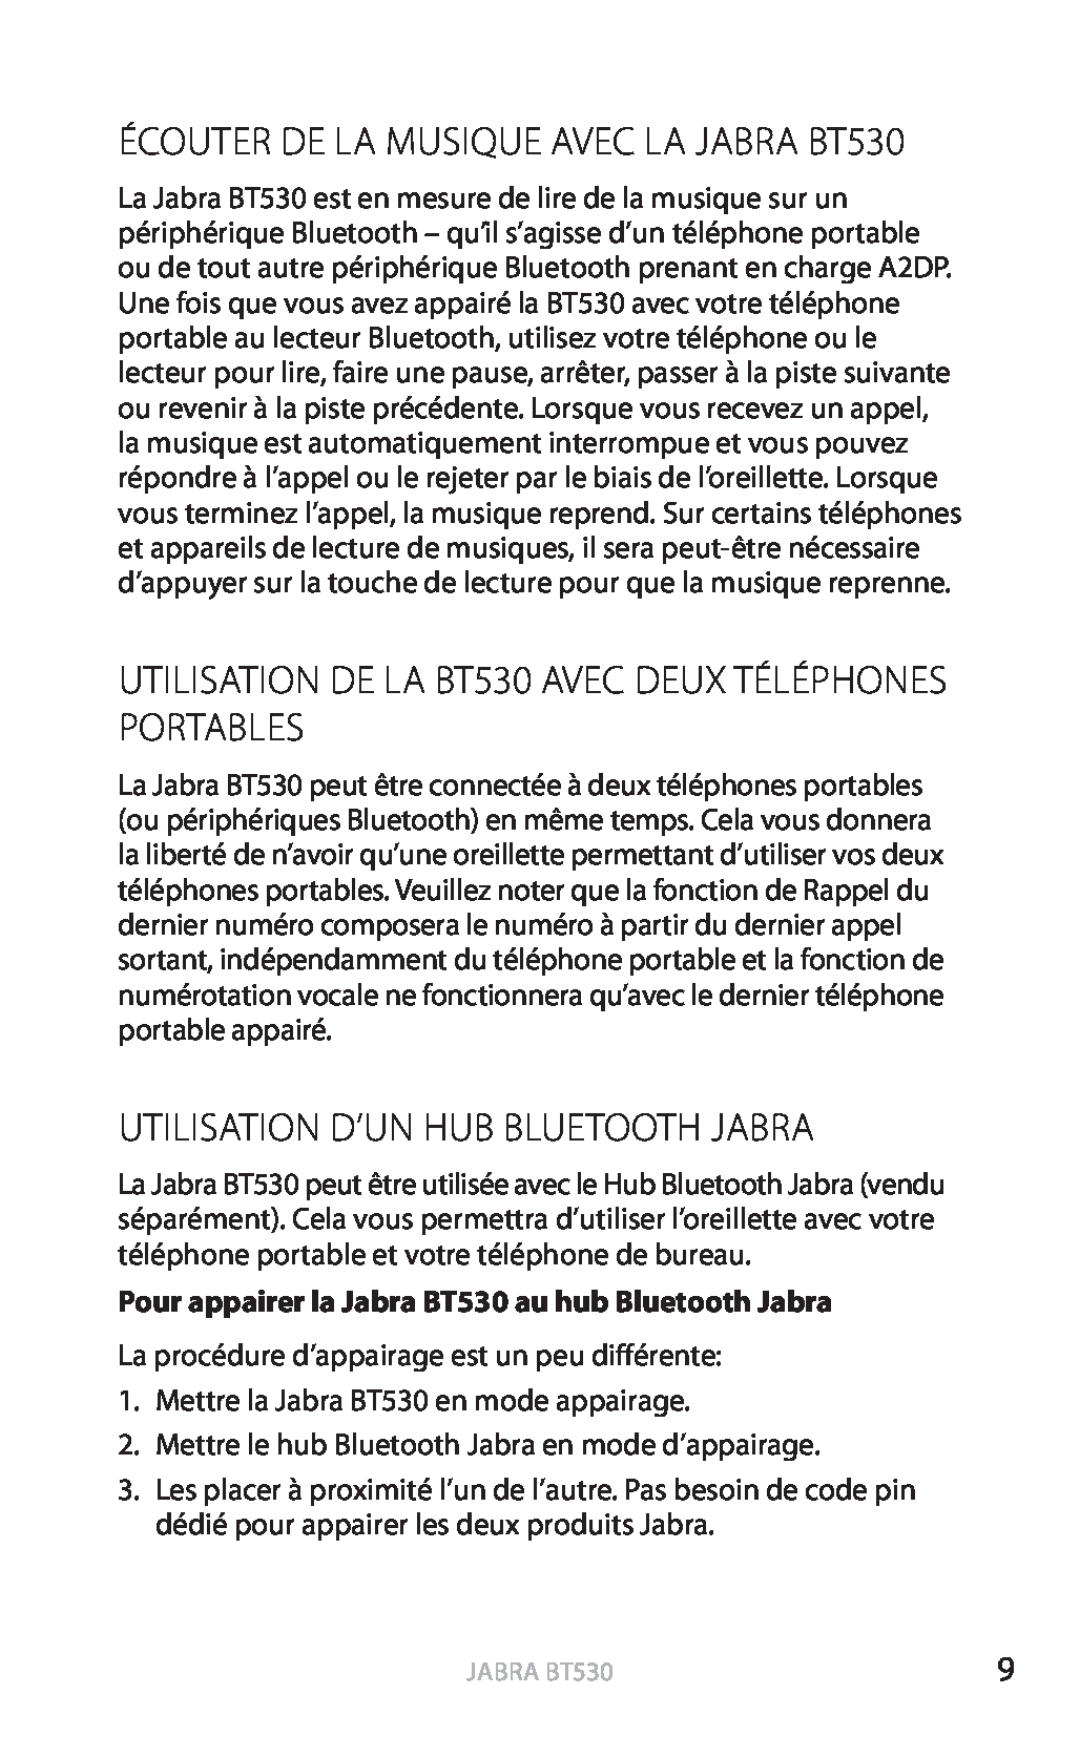 Jabra user manual Utilisation D’Un Hub Bluetooth Jabra, ÉCOUTER DE LA MUSIQUE AVEC LA JABRA BT530, english, Jabra bt530 